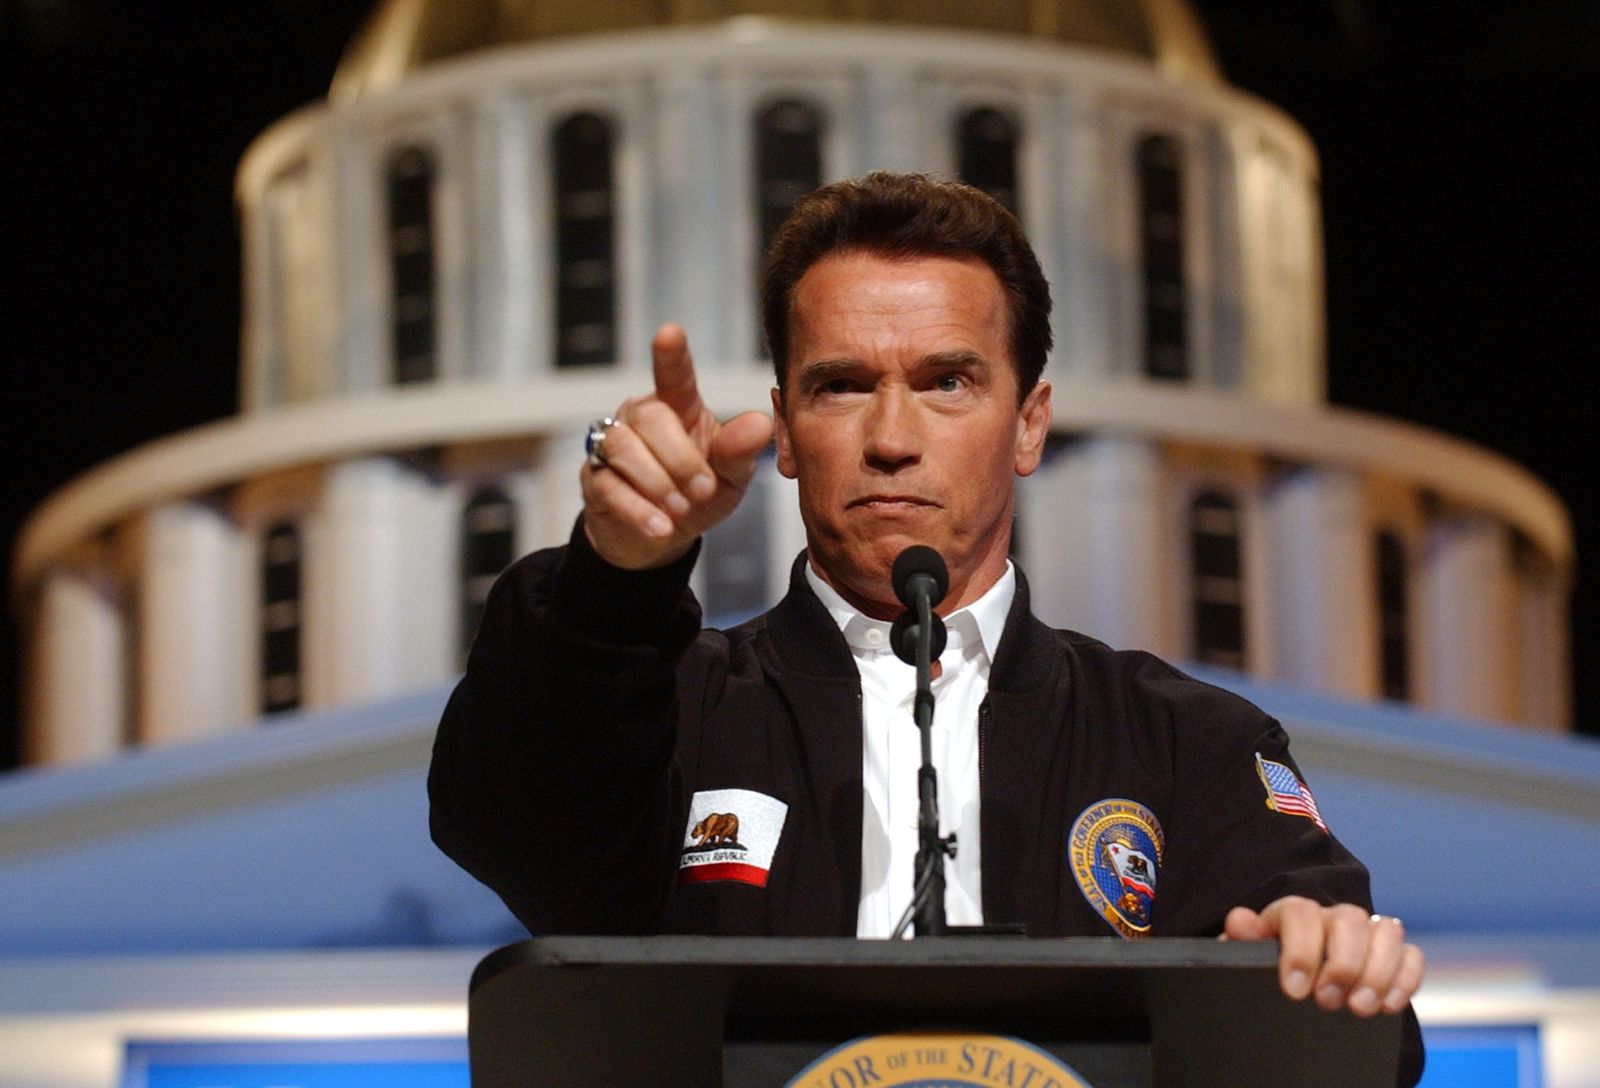 Arnold Schwarzenegger For Senate 2018?